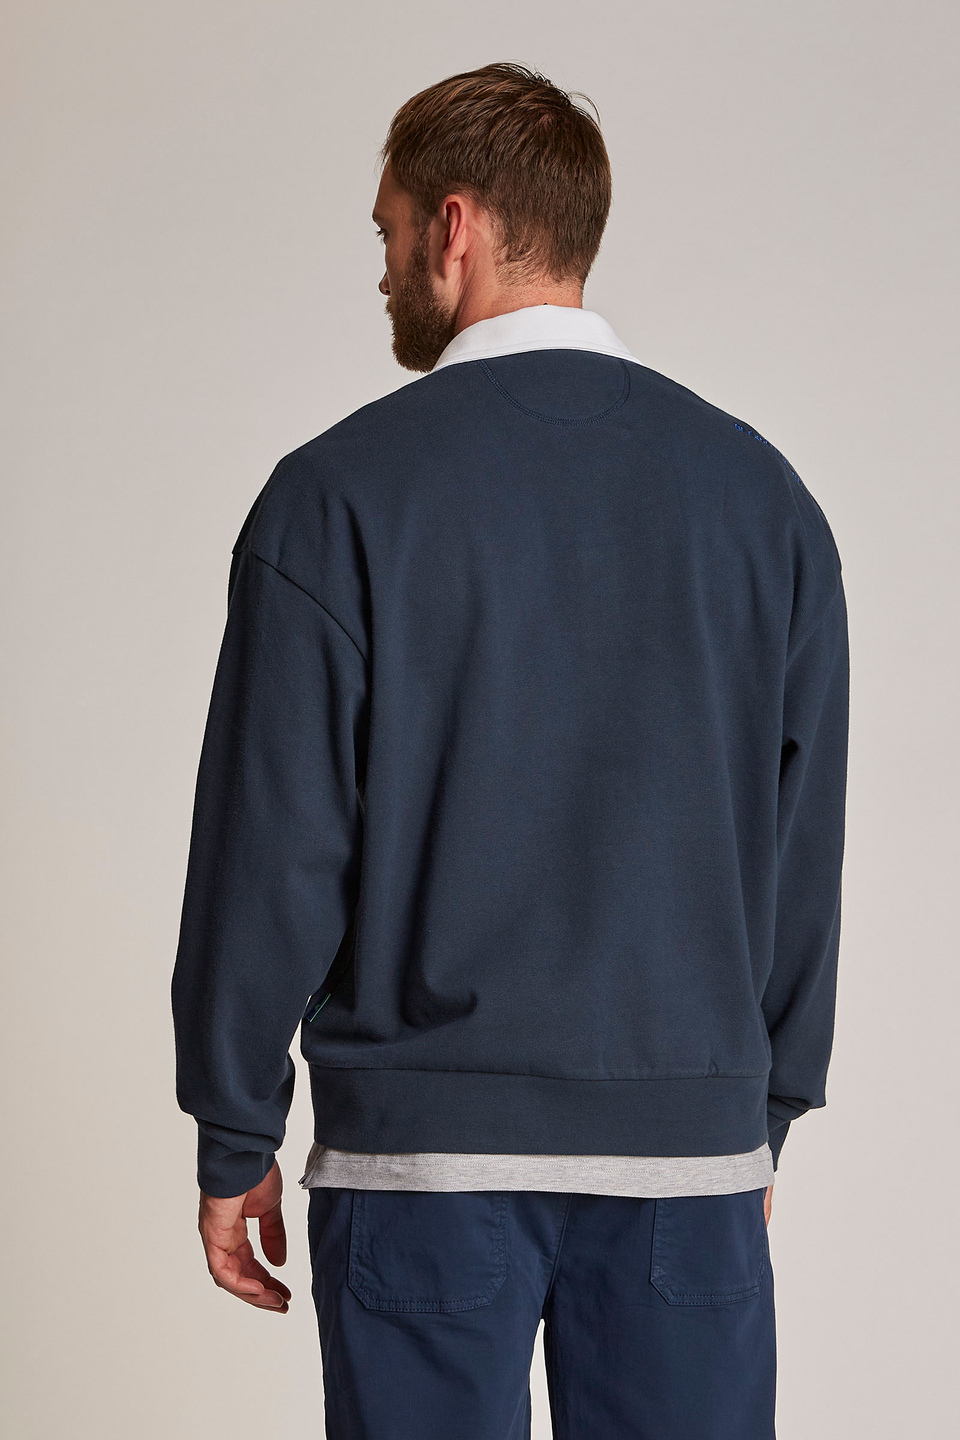 Herren-Sweatshirt aus 100 % Baumwolle mit einem Kragen in Kontrastoptik, oversized Modell - La Martina - Official Online Shop